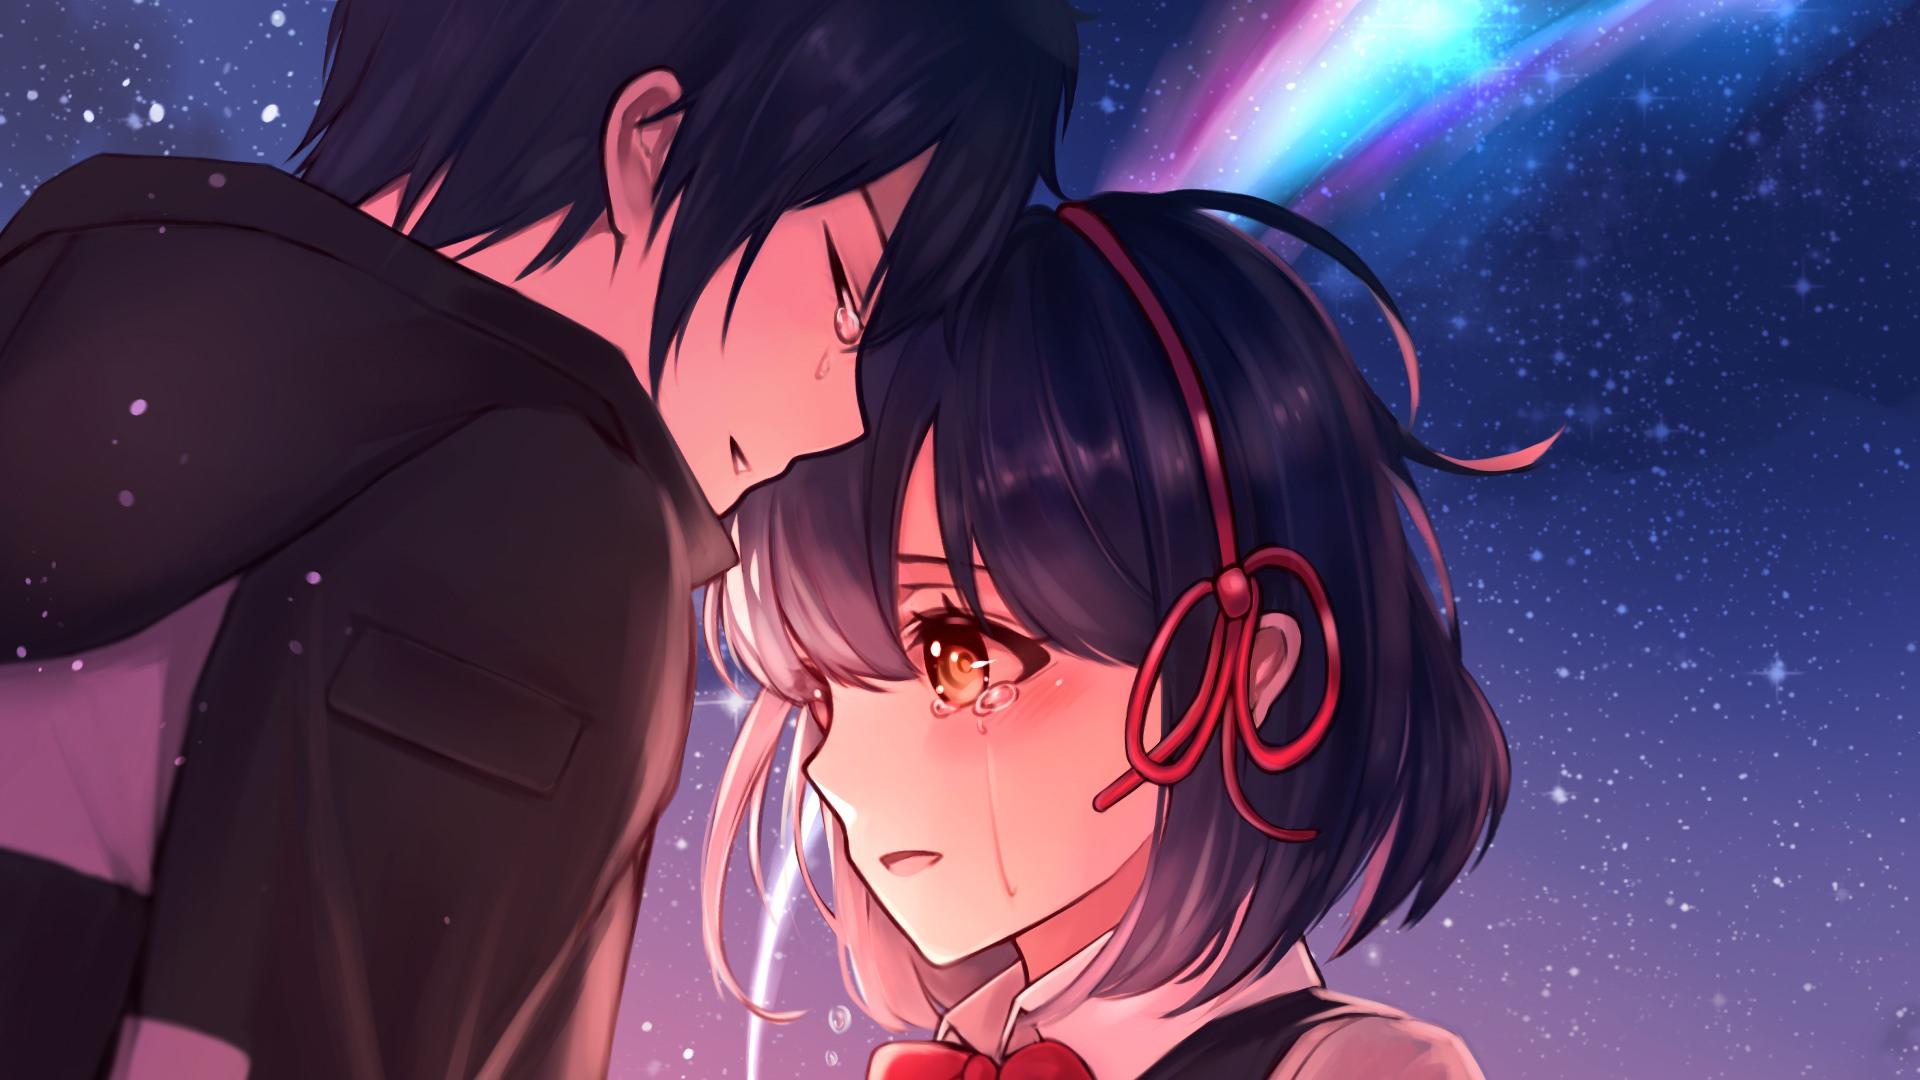 Crying Anime Girl Wallpaper Free Crying Anime Girl